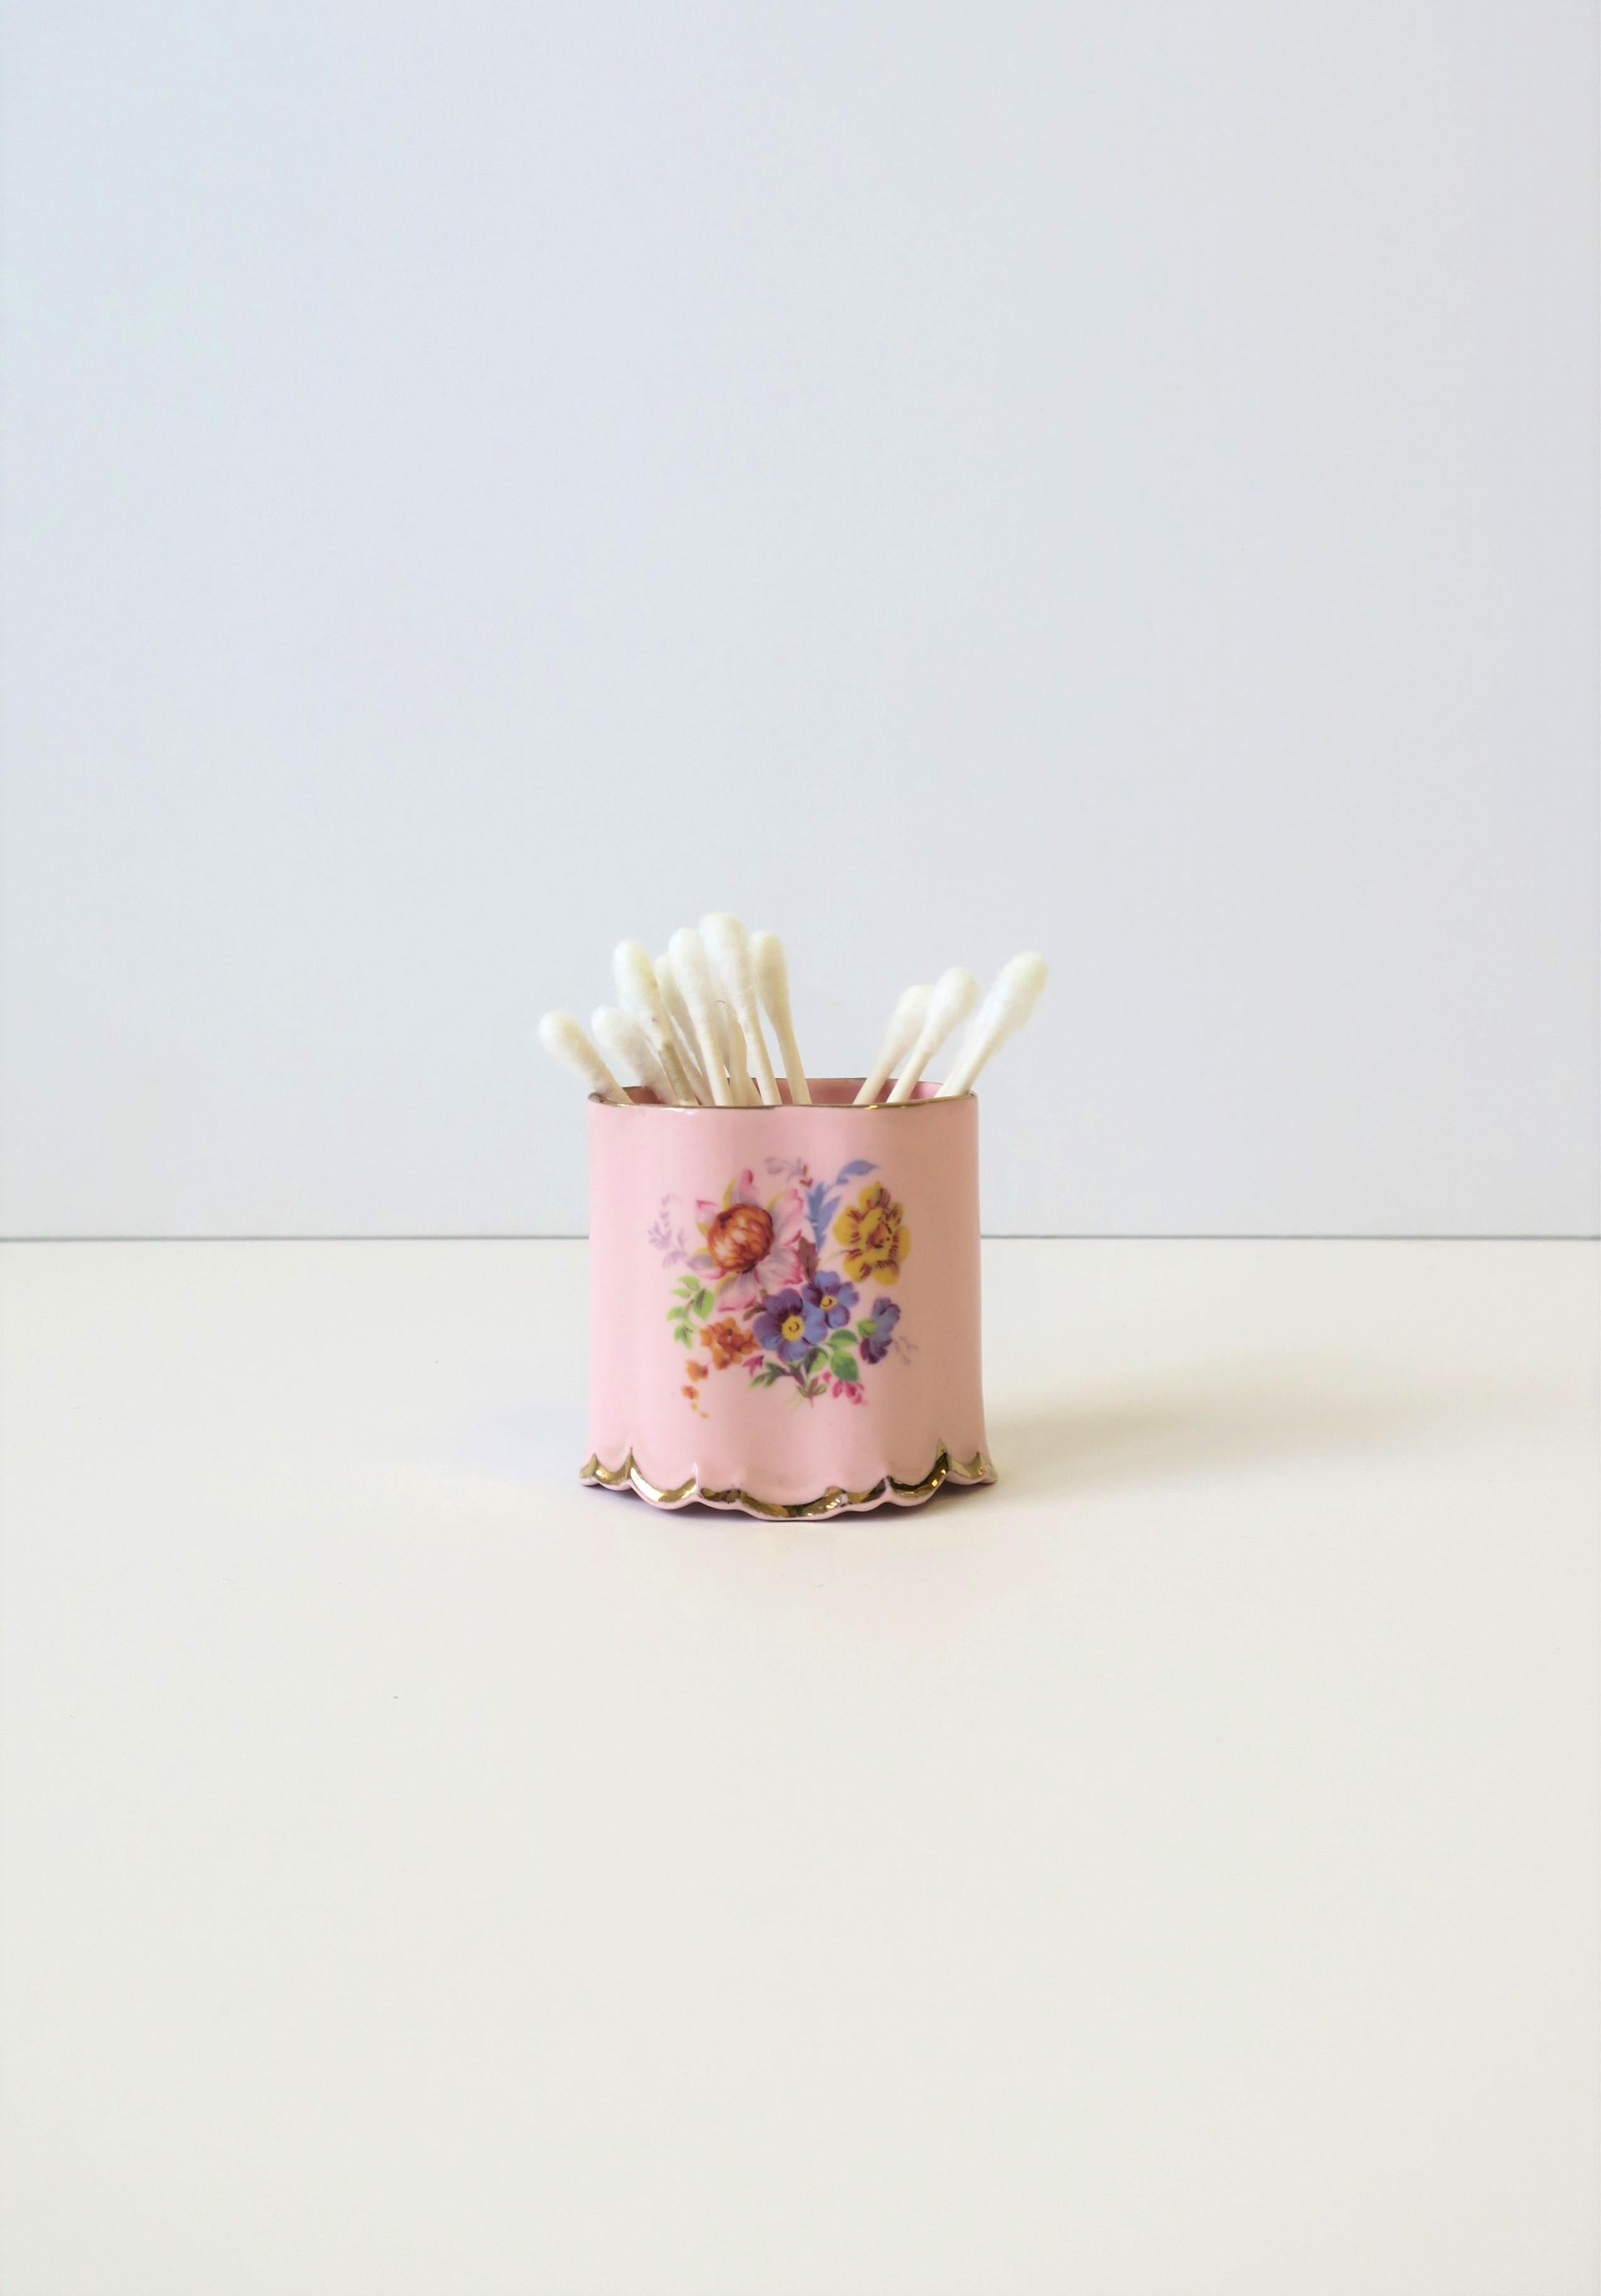 Zigarettenspitze aus englischem rosafarbenem Porzellan im Rokokostil von Arthur Bowker für Staffordshire, ca. Anfang des 20. Jahrhunderts, England. Das Stück ist aus rosafarbenem Porzellan, oval, mit einem floralen Chintz-Muster auf der Vorder- und